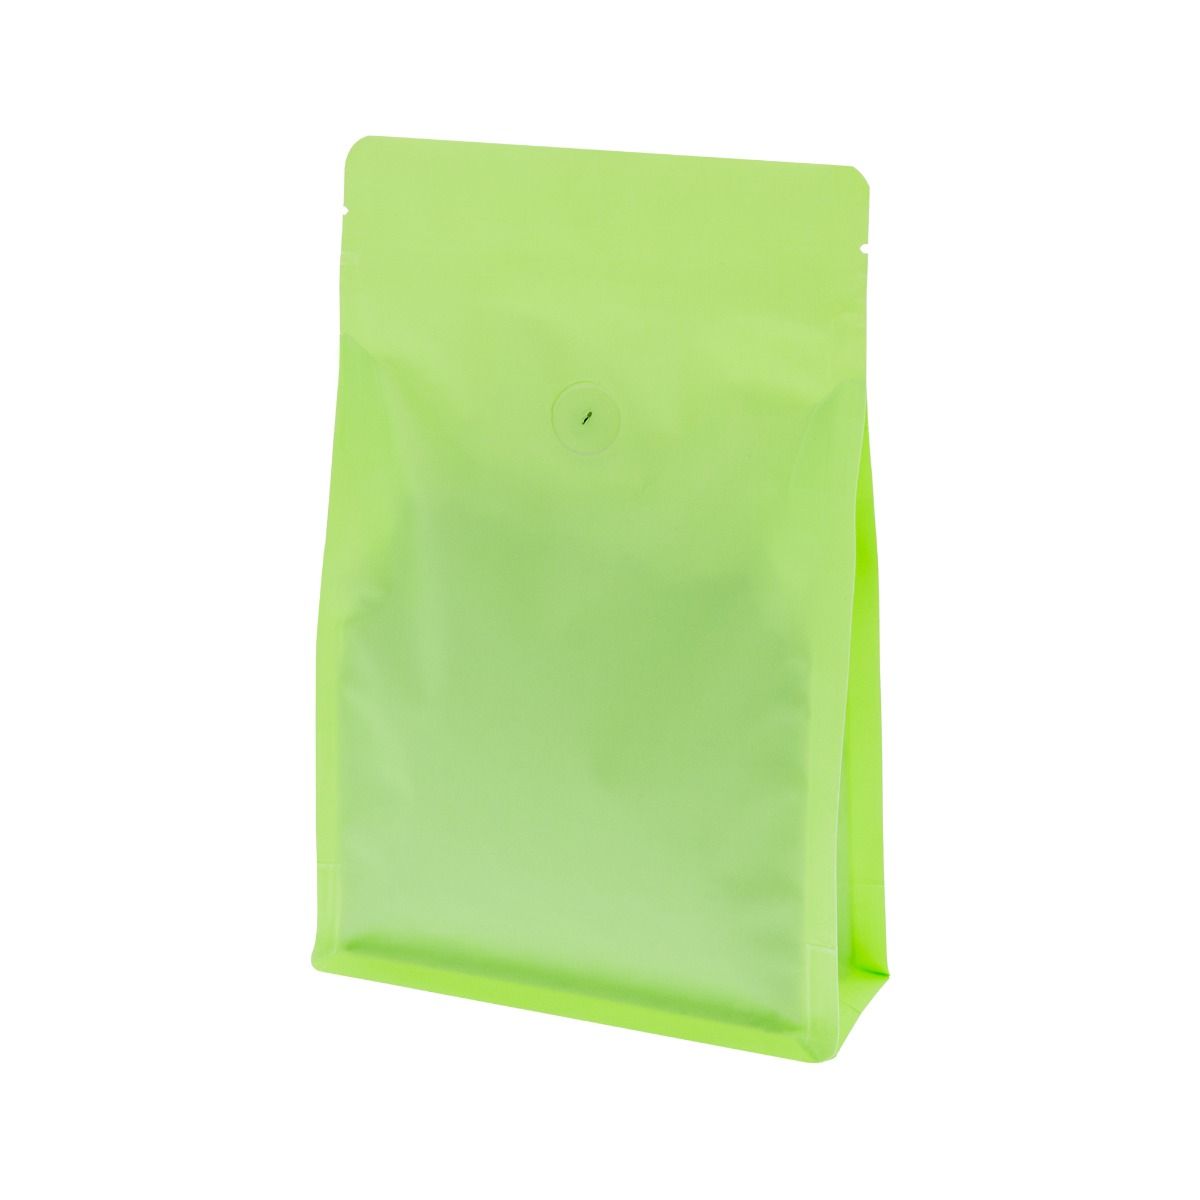 Flat bottom koffiezak met zipper - mat groen (100% recyclebaar)